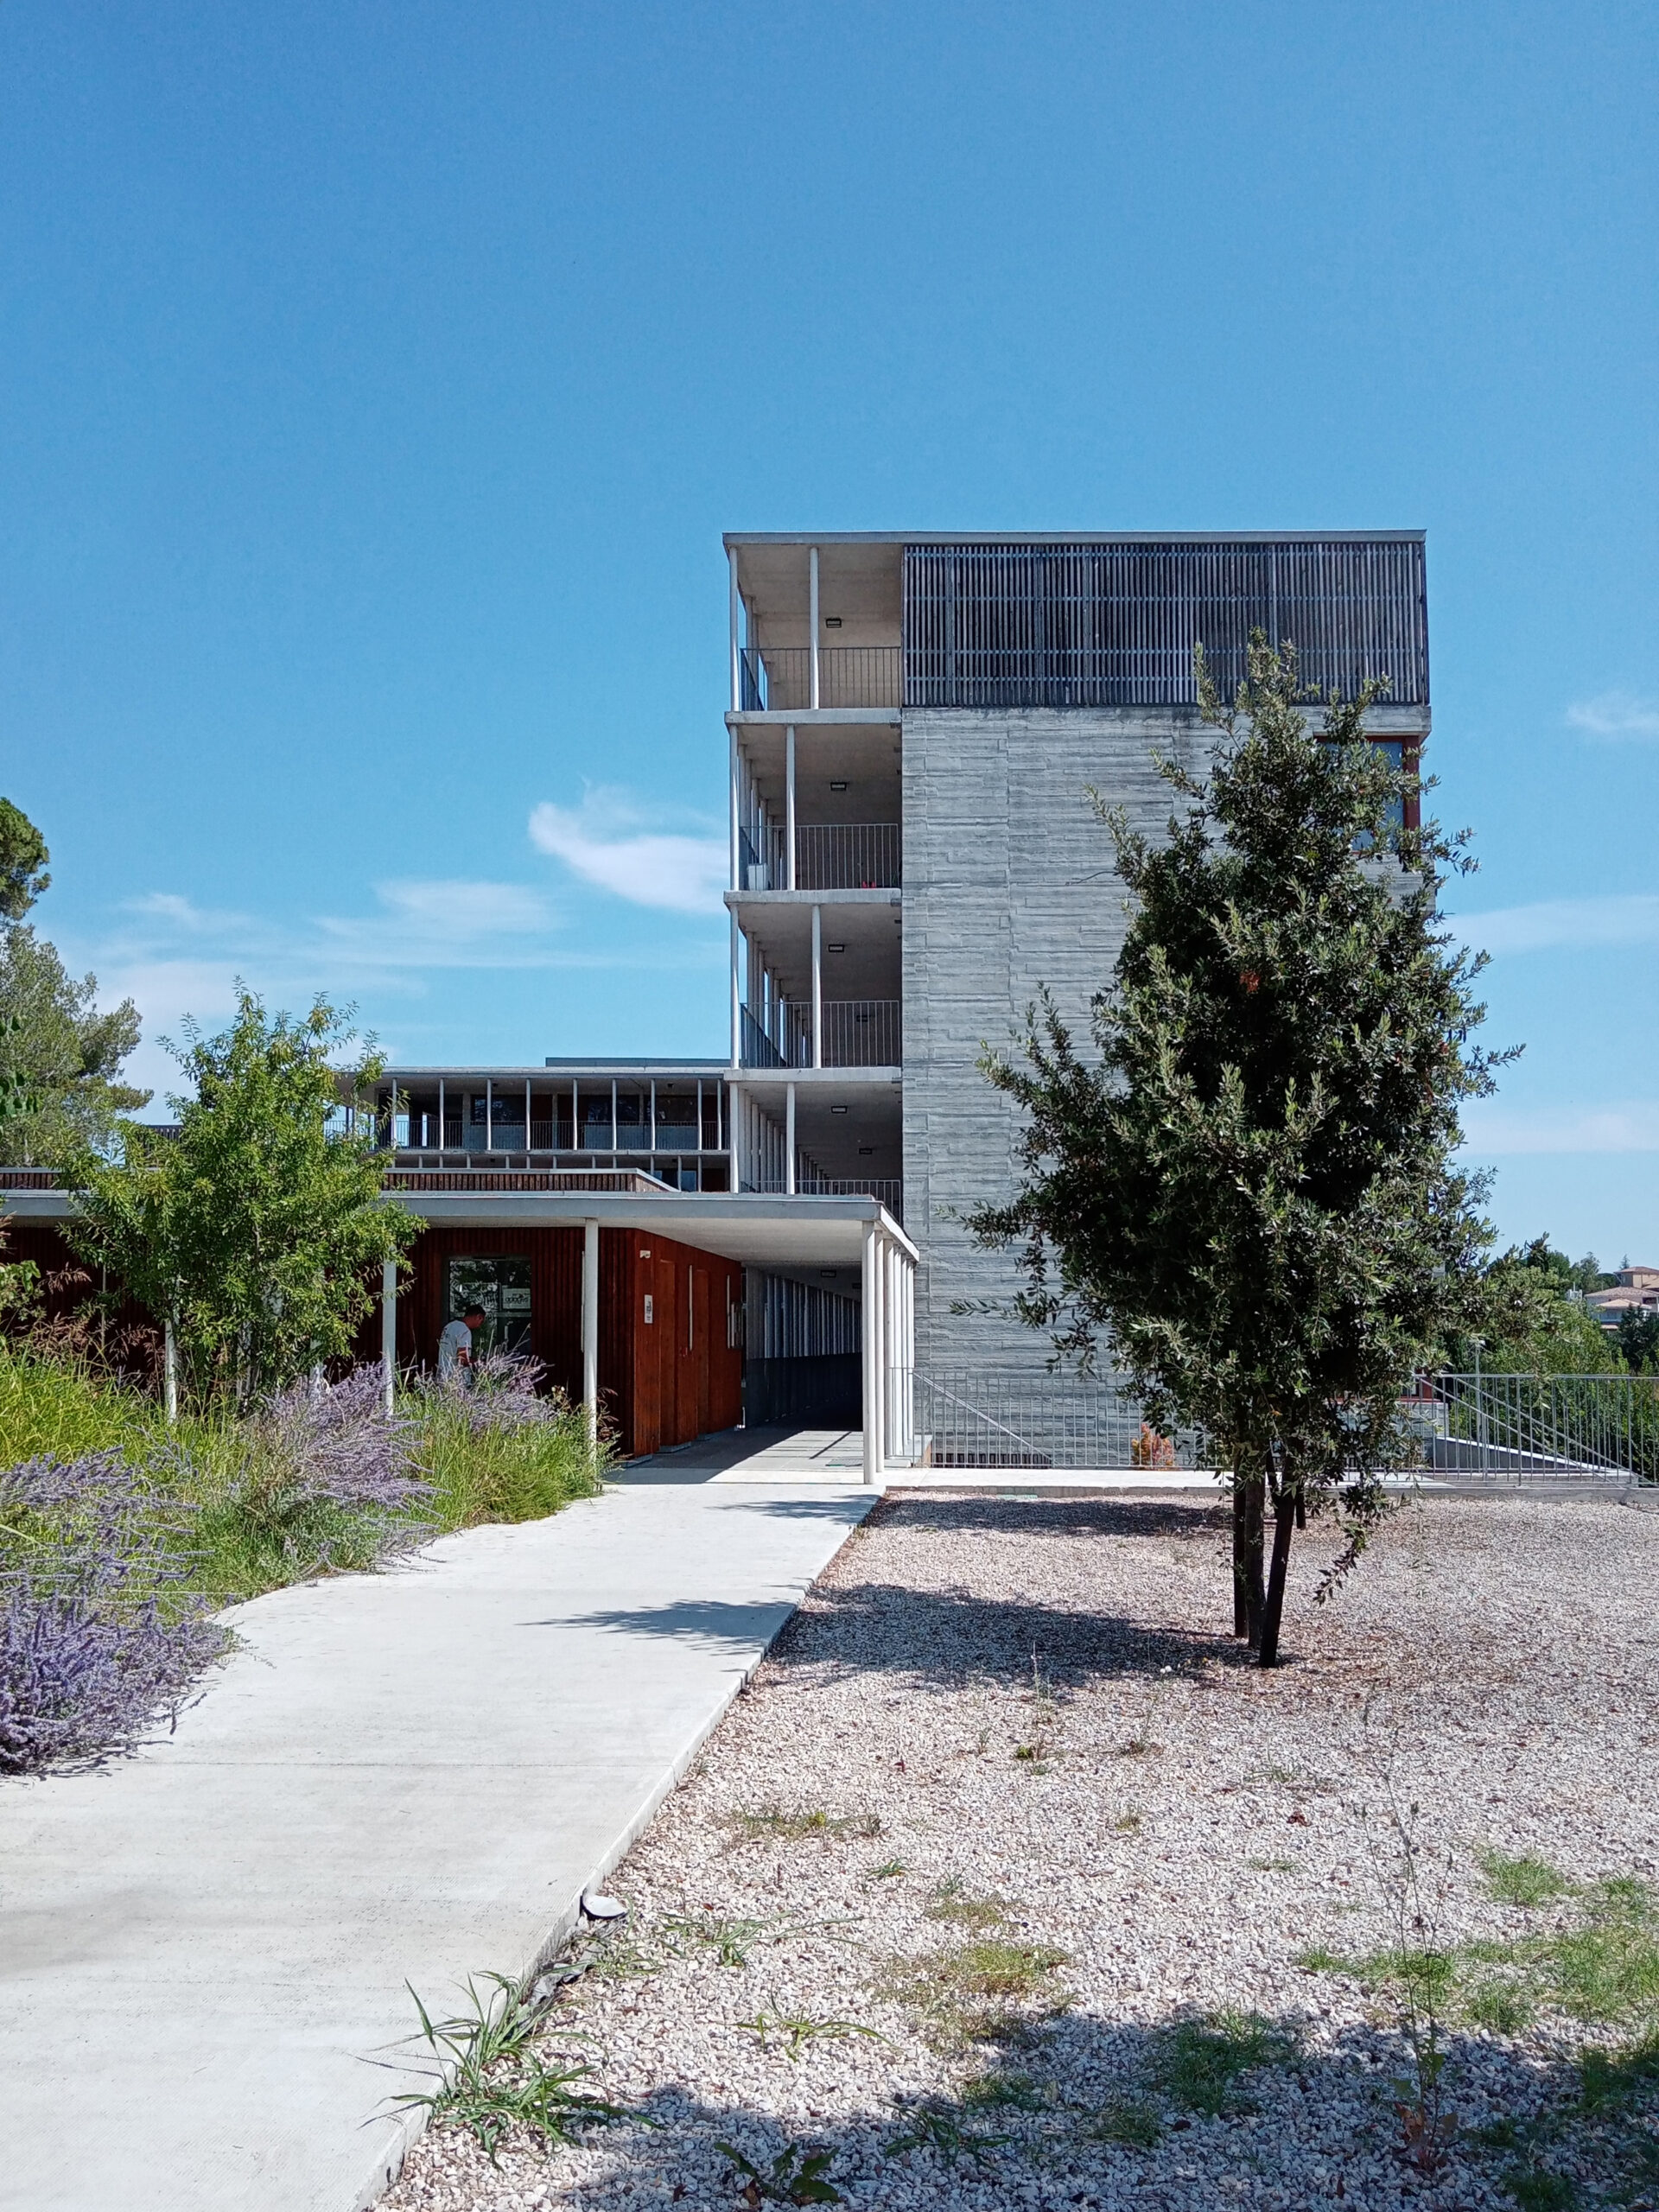 Logements Résidence du Mas Prunet, Montpellier (34) - Design et architecture par l'atelier Hamerman Rouby architectes